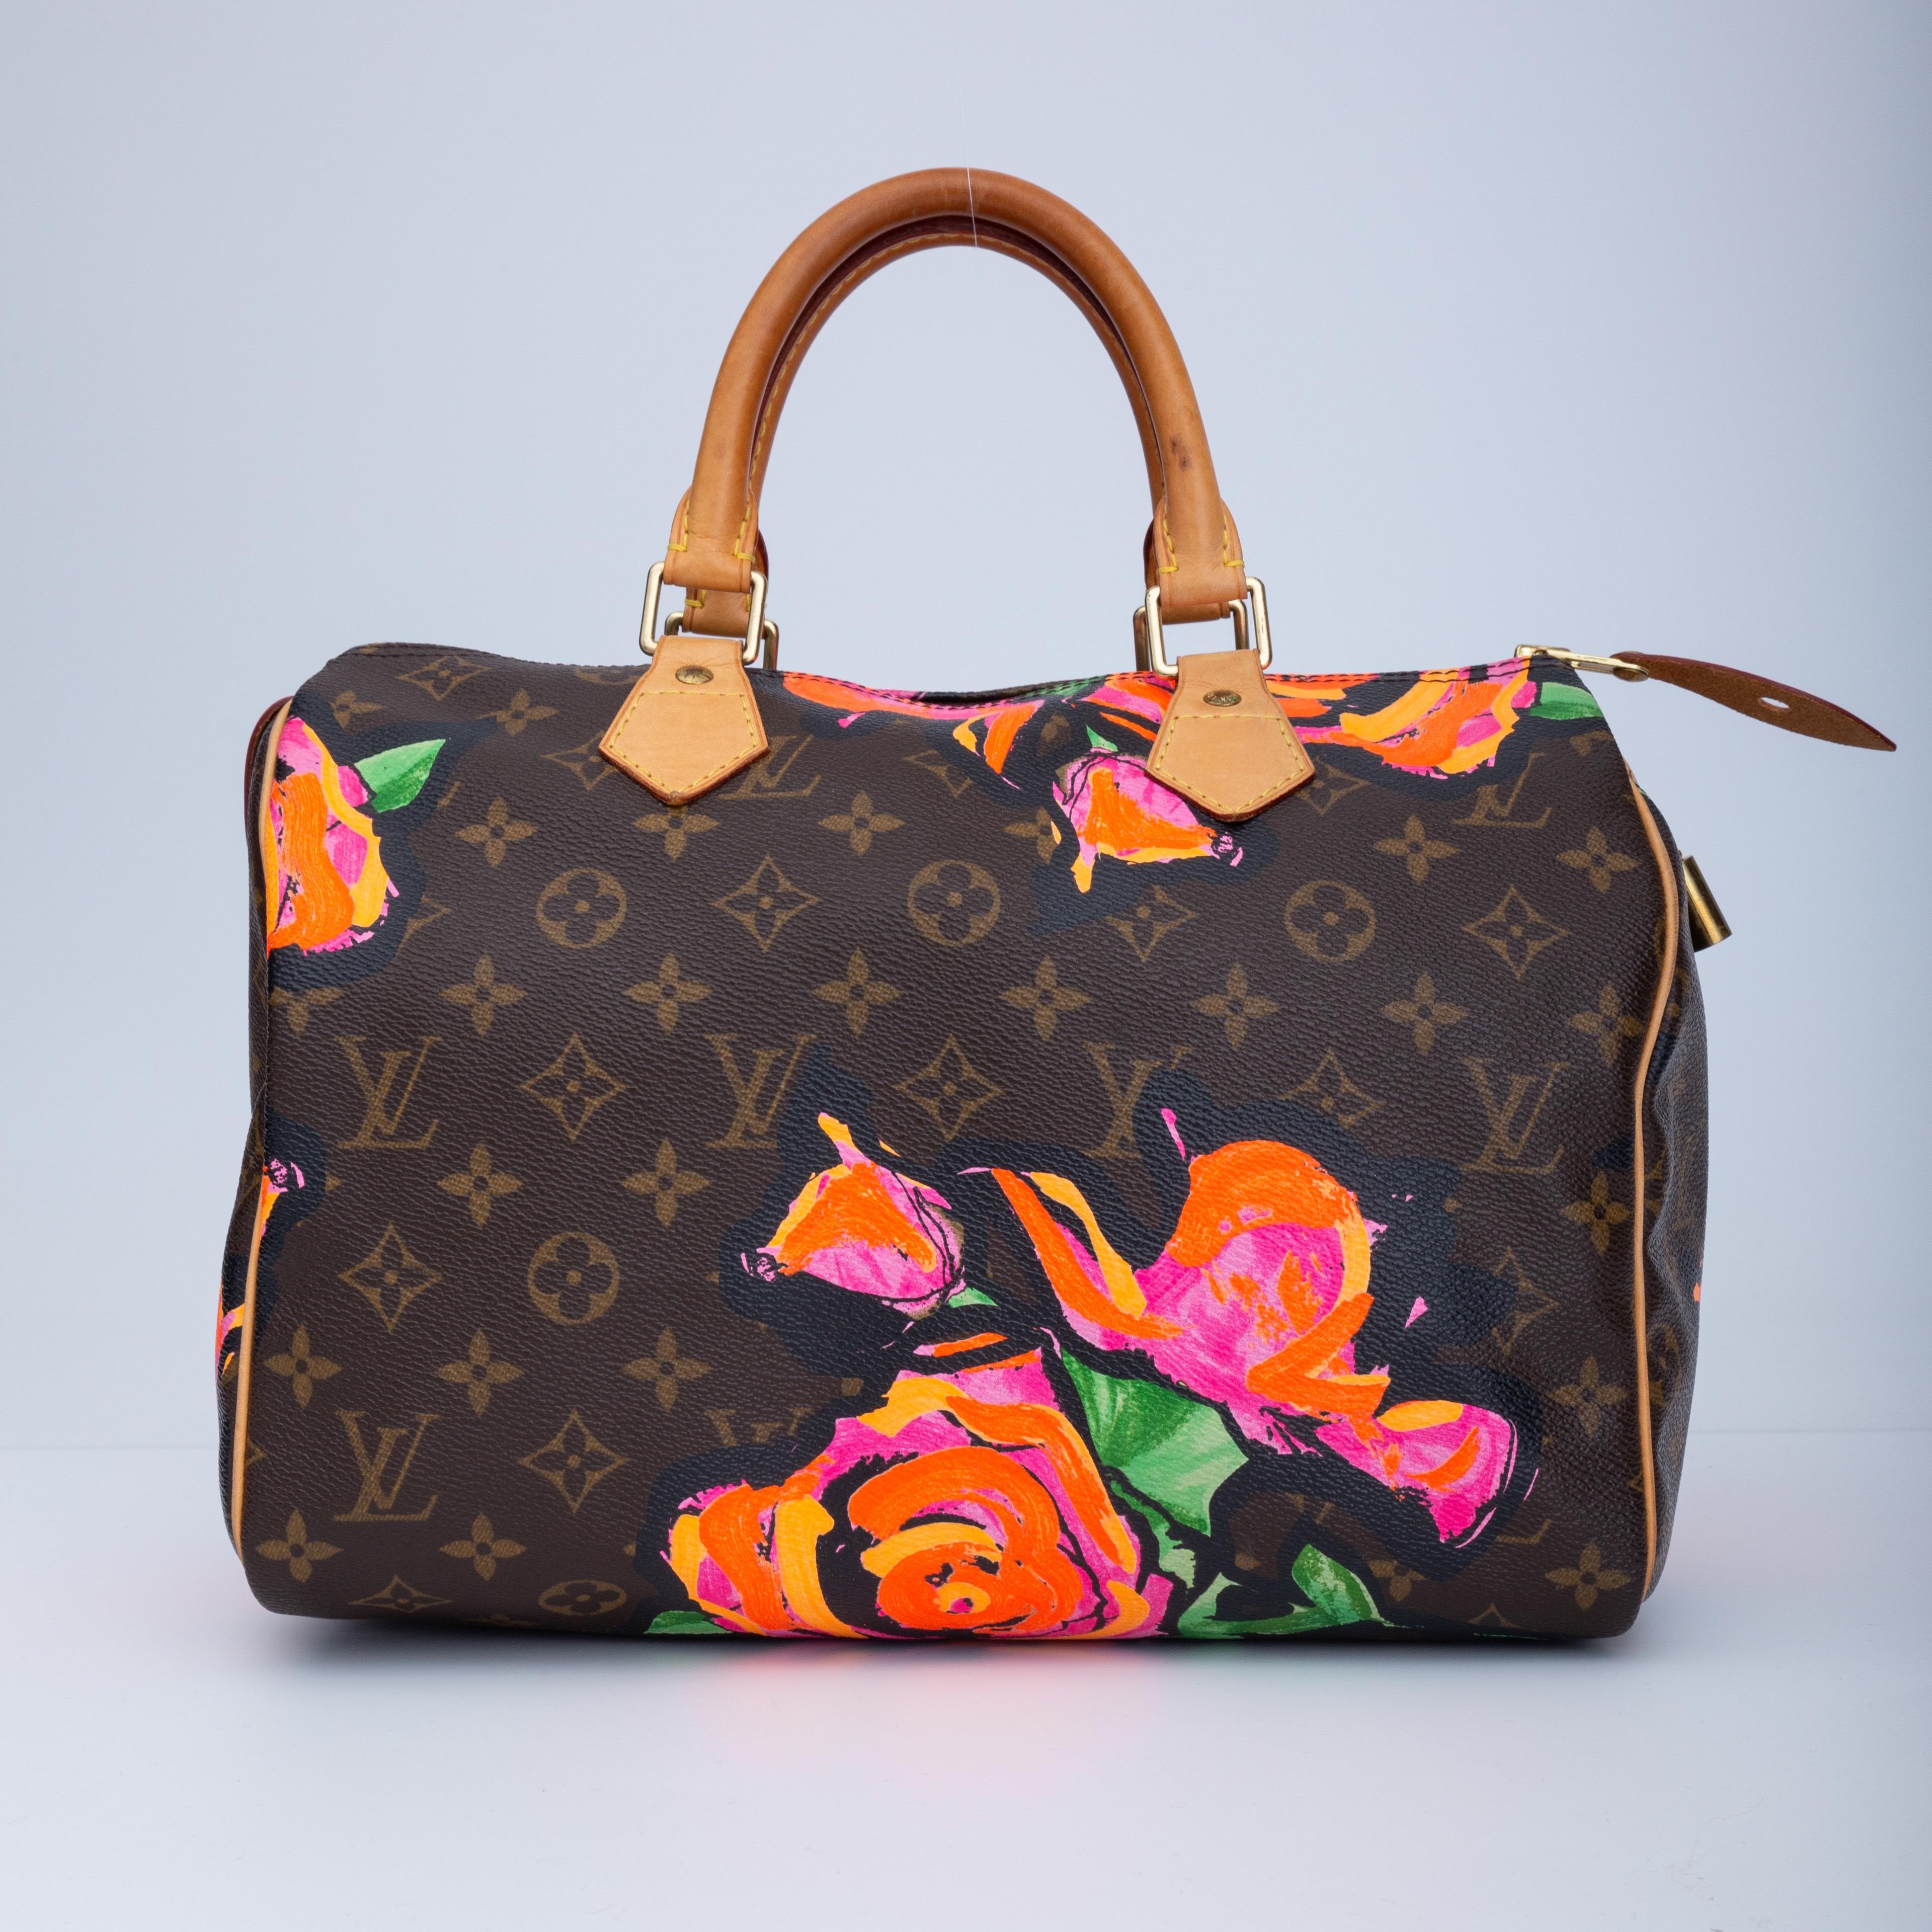 Ce sac Speedy en édition limitée a été conçu par Stephen Sprouse. Le sac est composé du traditionnel monogramme Louis Vuitton sur une toile enduite avec une impression vibrante de roses abstraites décoratives en rose, orange et vert. Le sac est doté